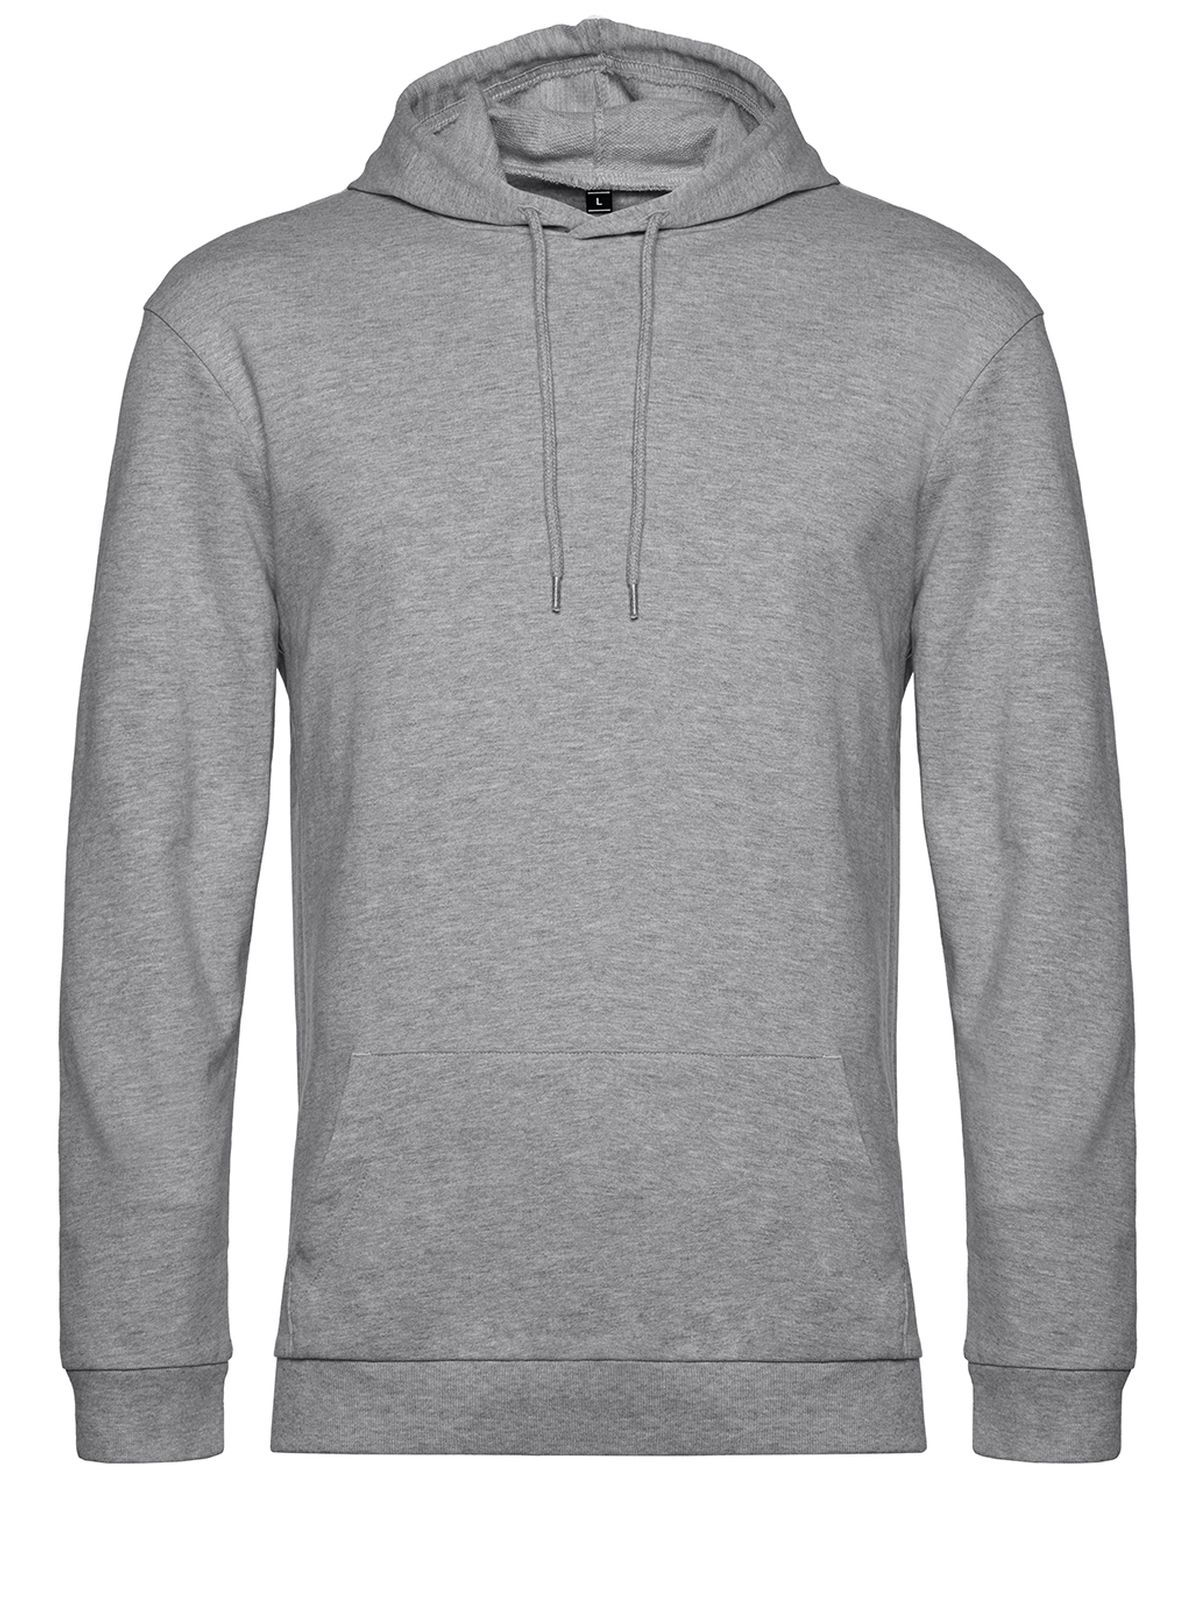 hoodie-heather-grey.webp